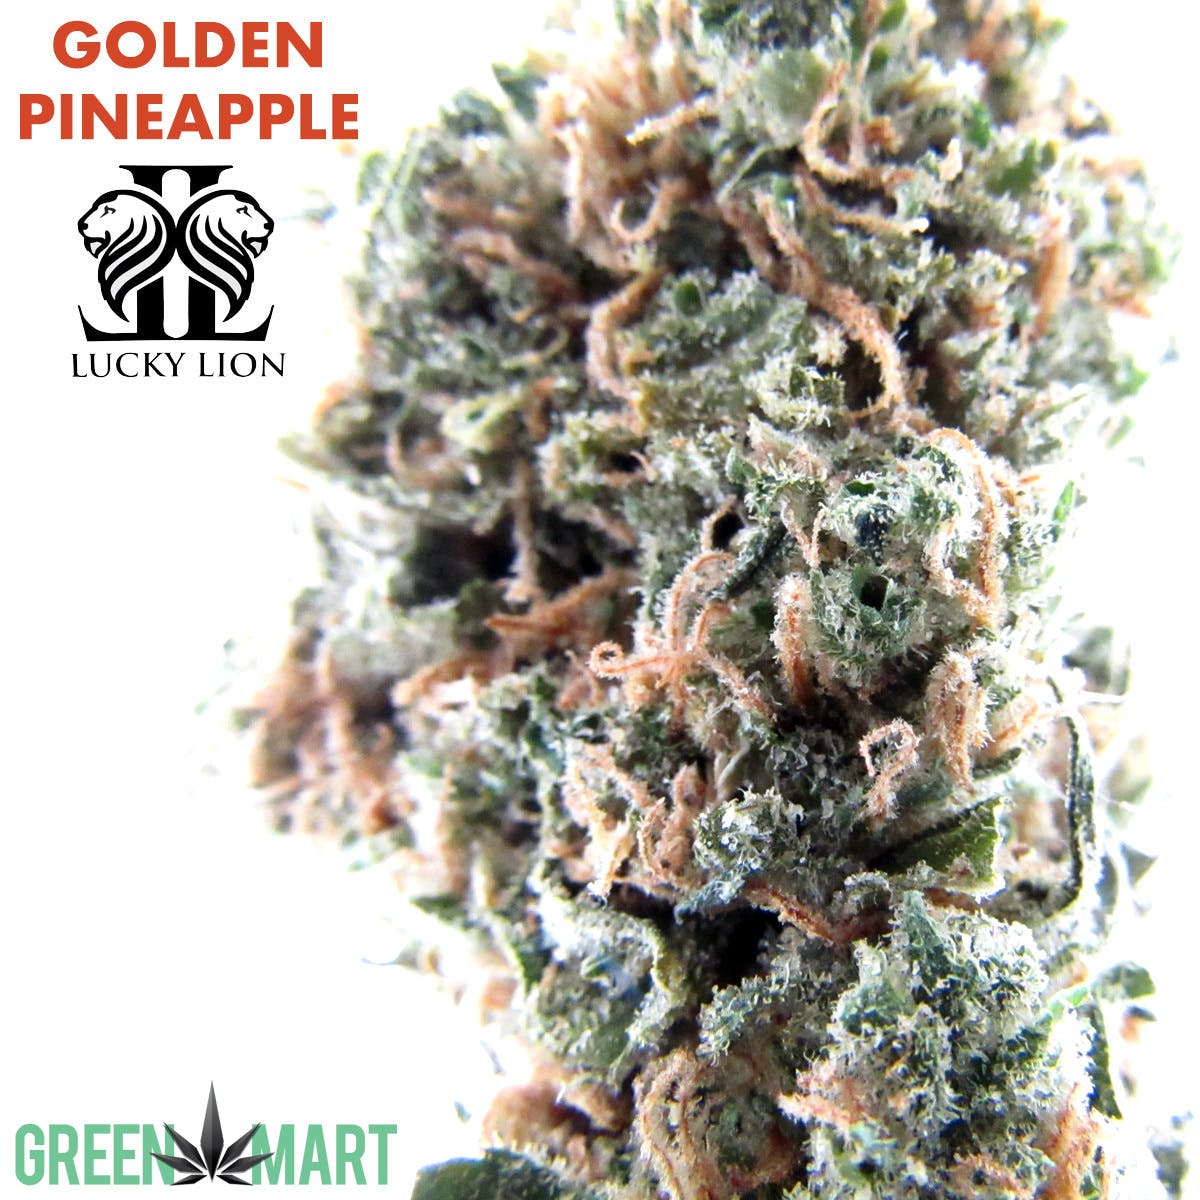 Lucky Lion's Golden Pineapple